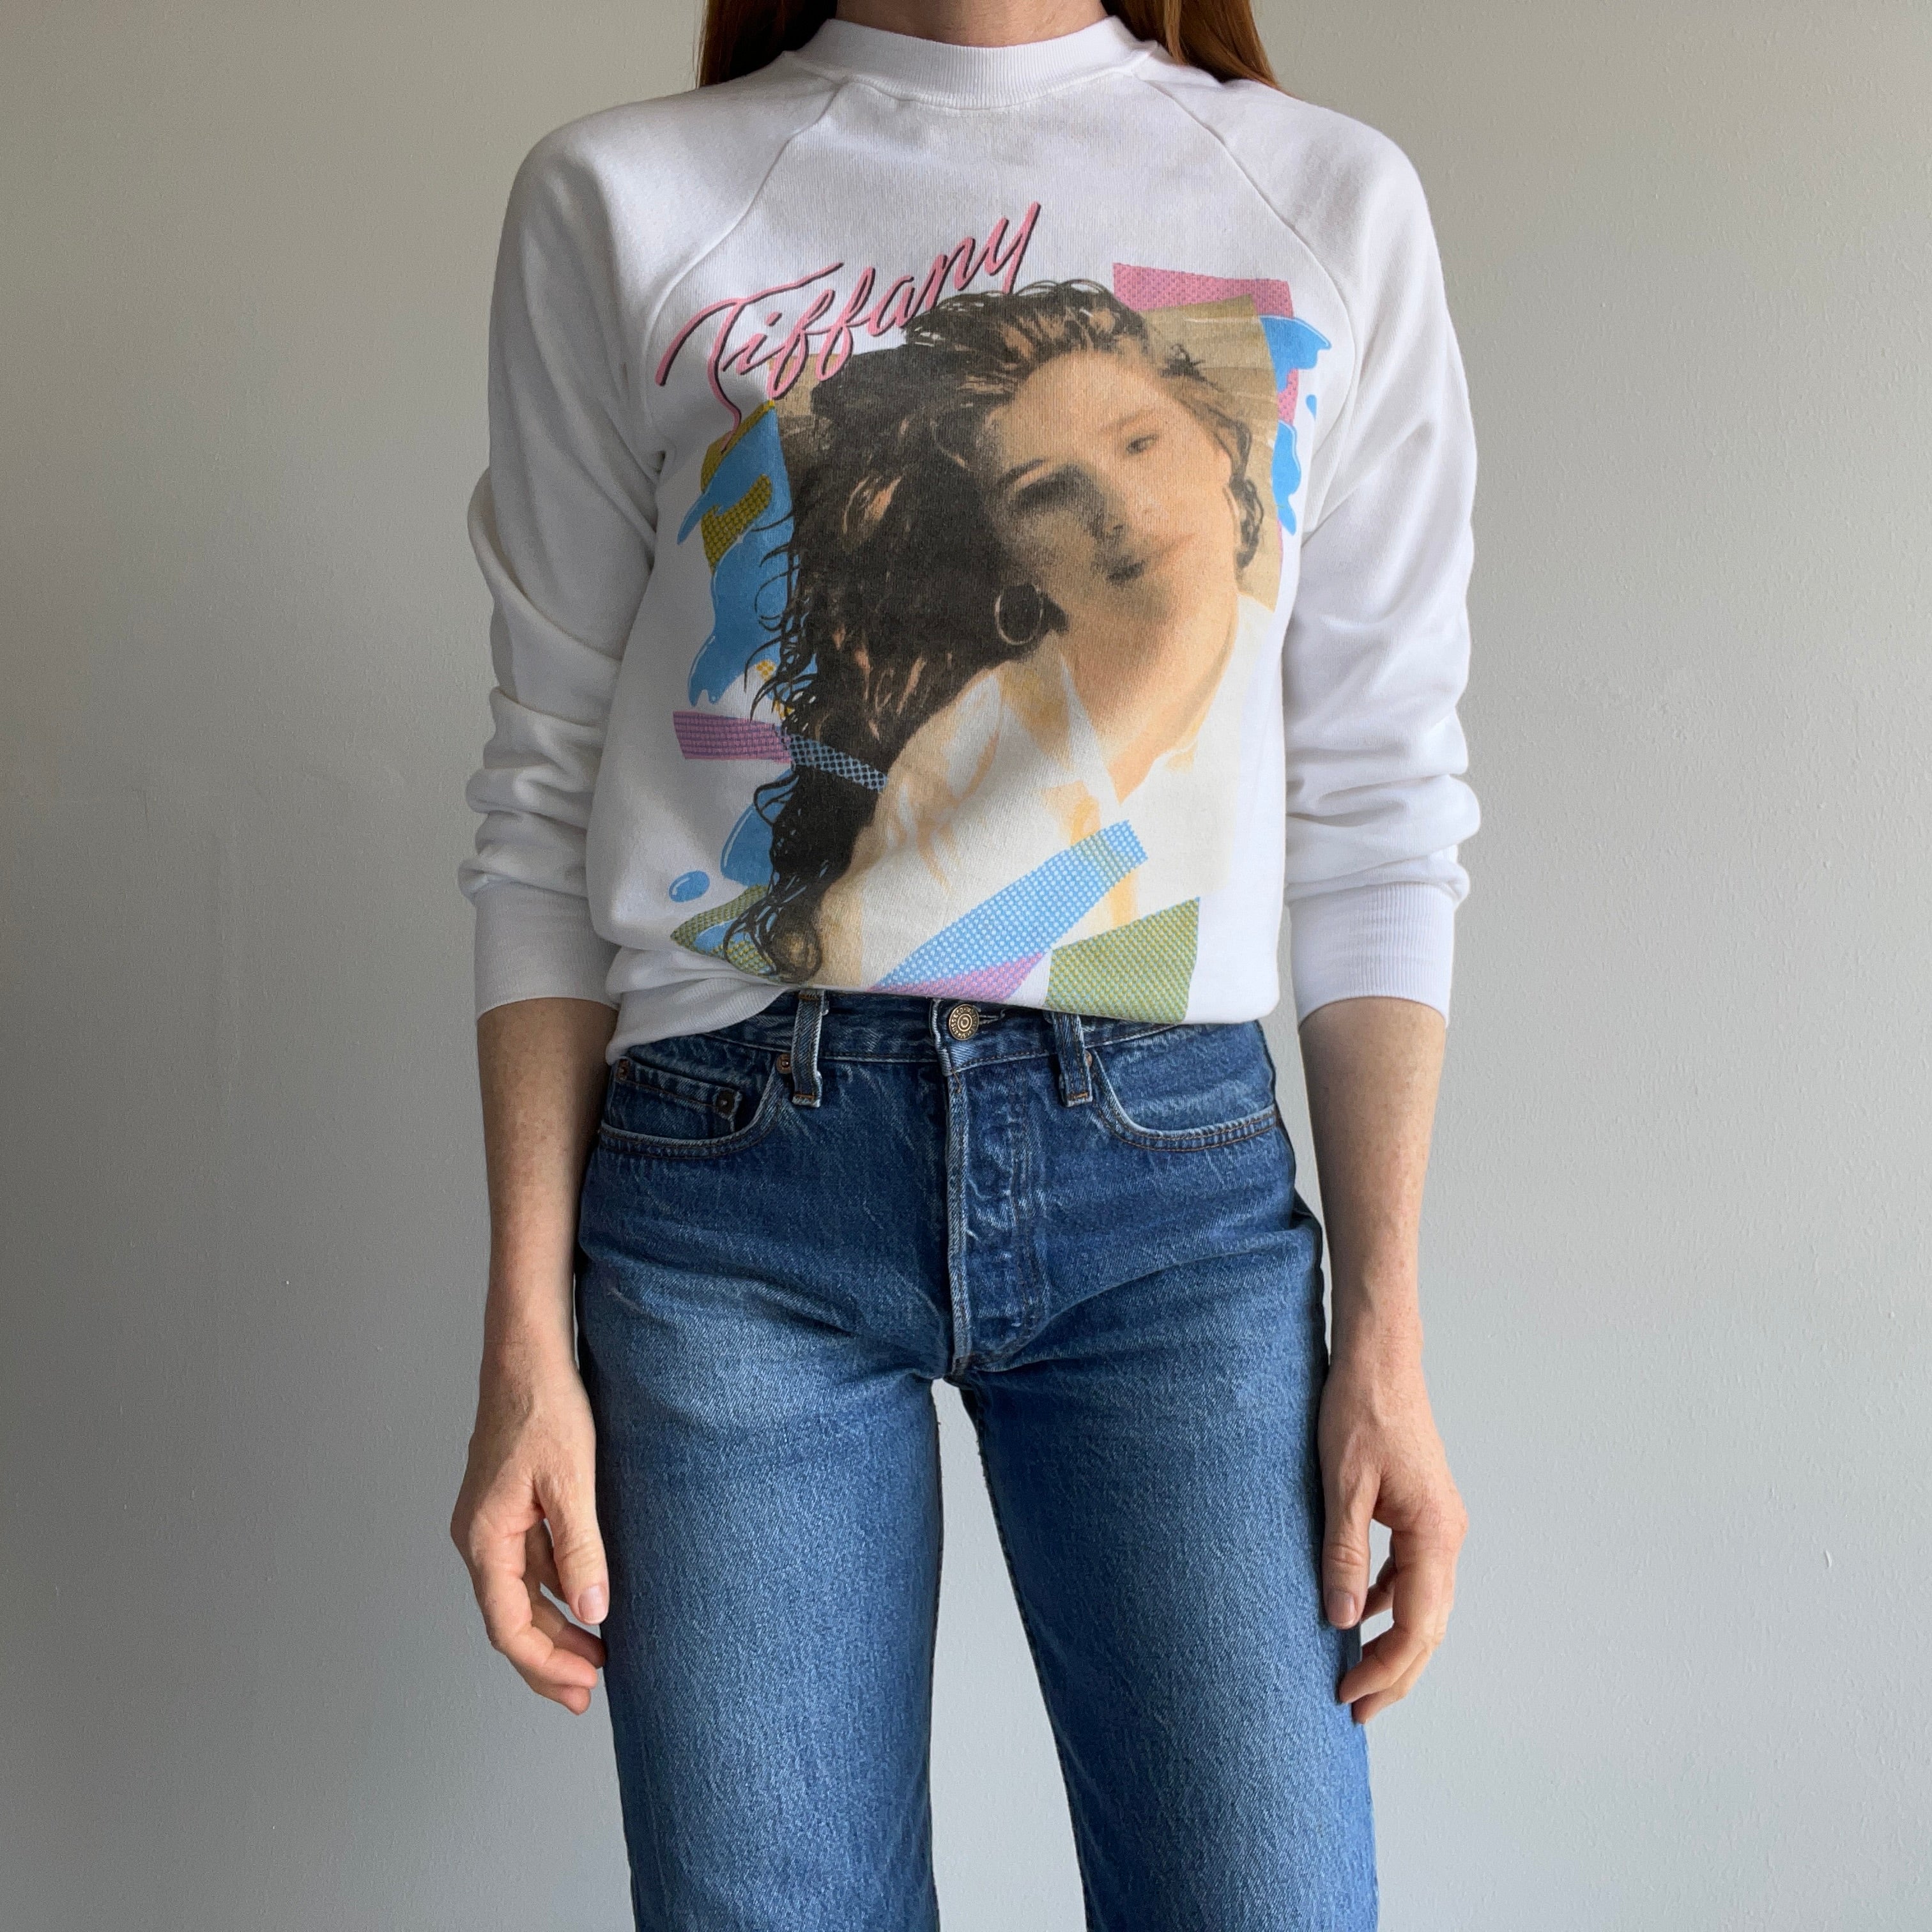 1989 Tiffany Pop Star Smaller Sweatshirt by Signal - Who?